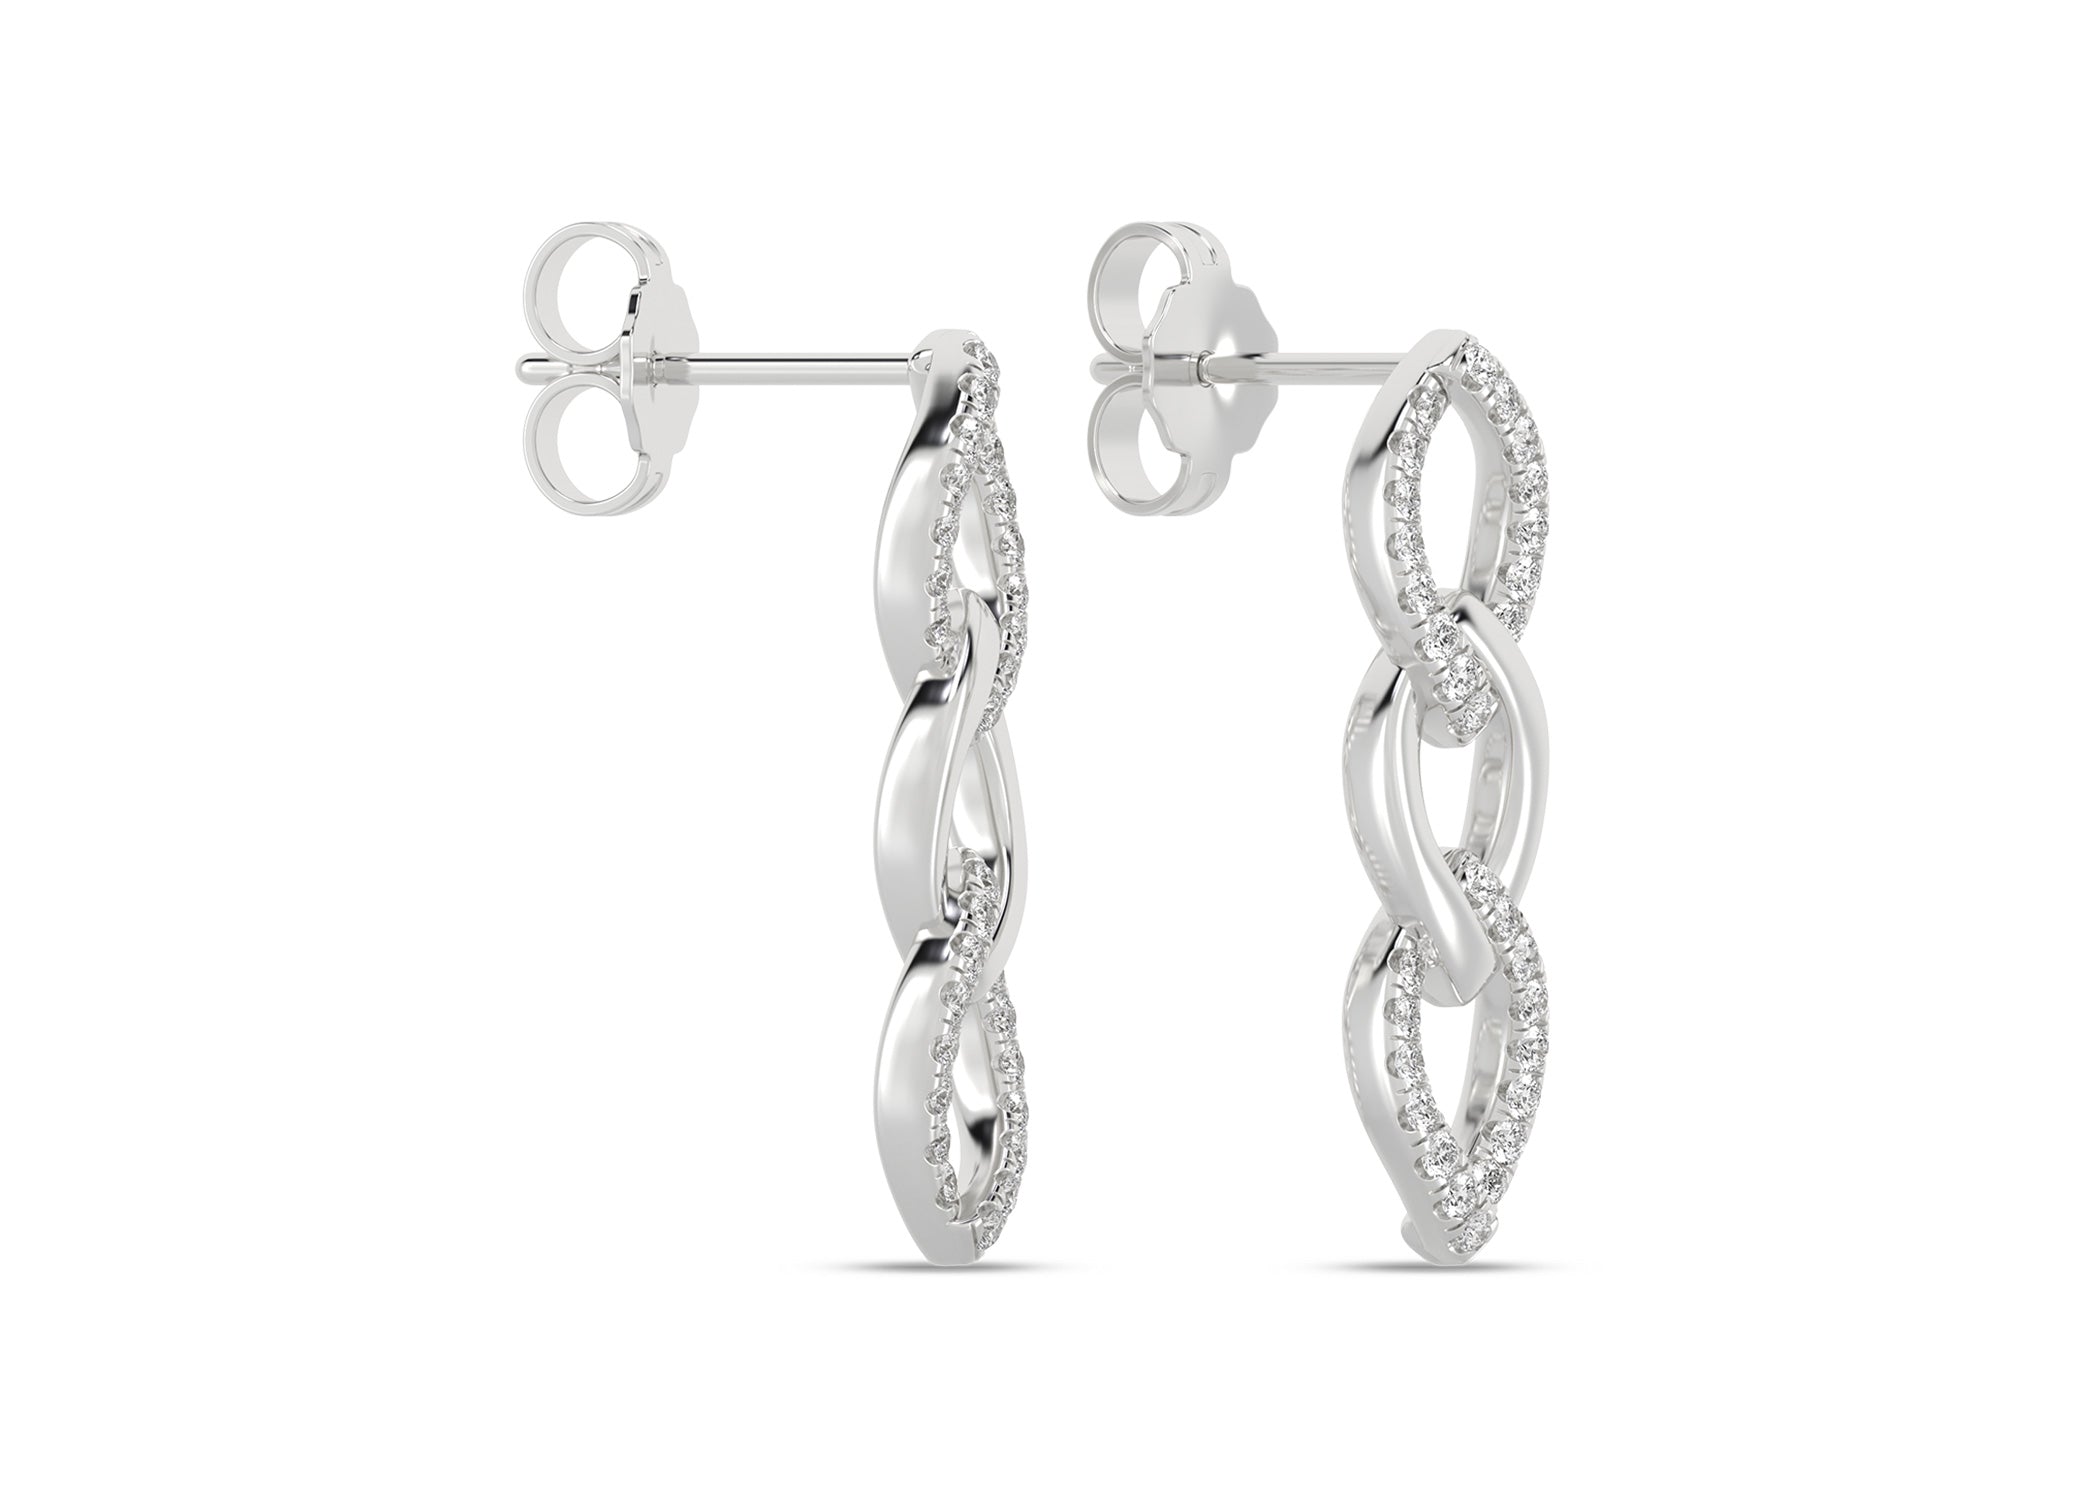 Alternating Cascading Diamond 3-Link Earrings - Earring 